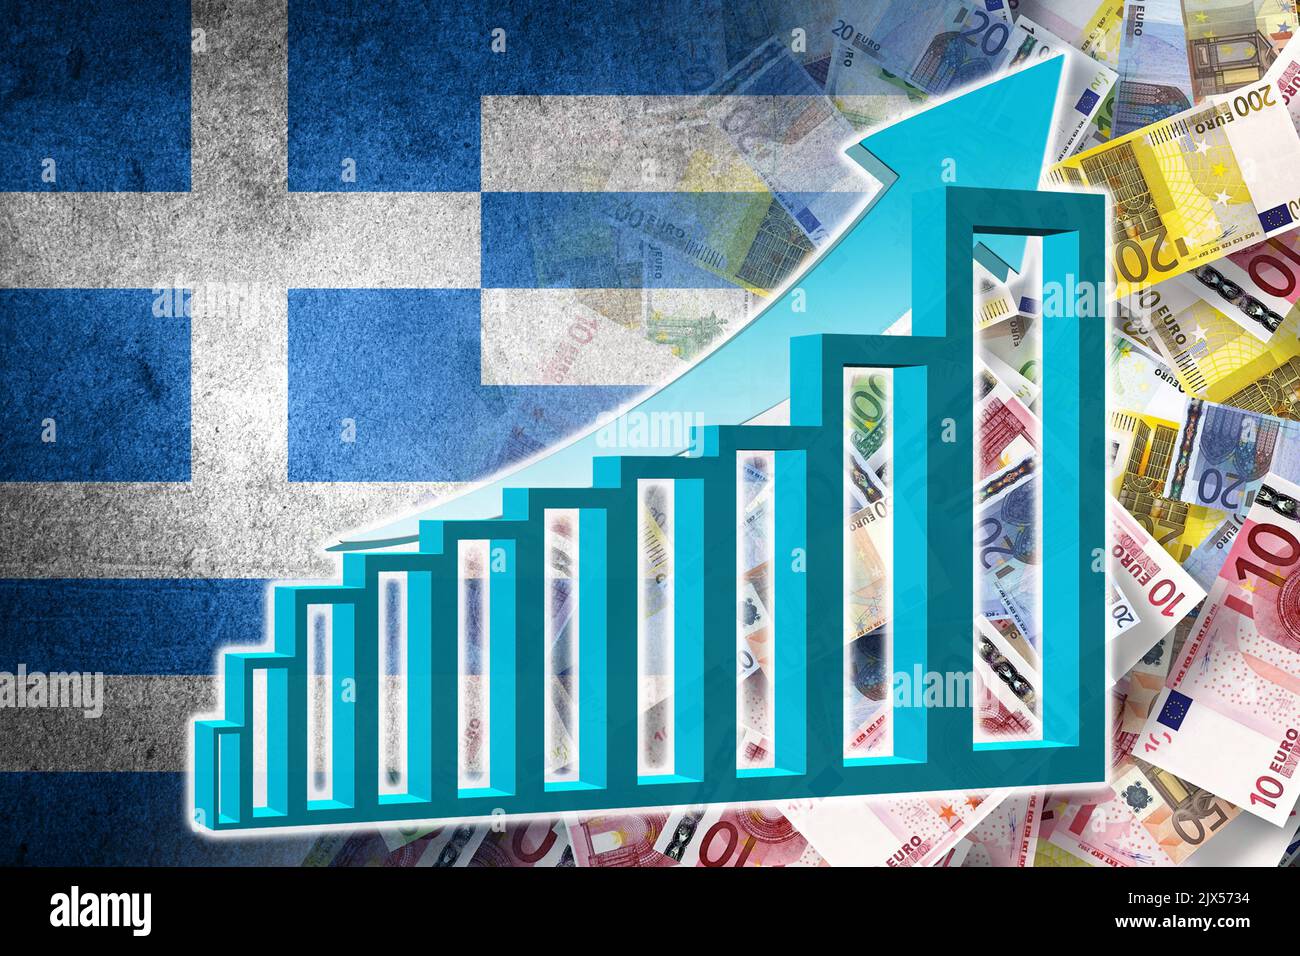 Grafico dell'economia: Freccia in aumento, banconote in euro in contanti e bandiera della Grecia (moneta, economia, affari, finanza, crisi) Foto Stock